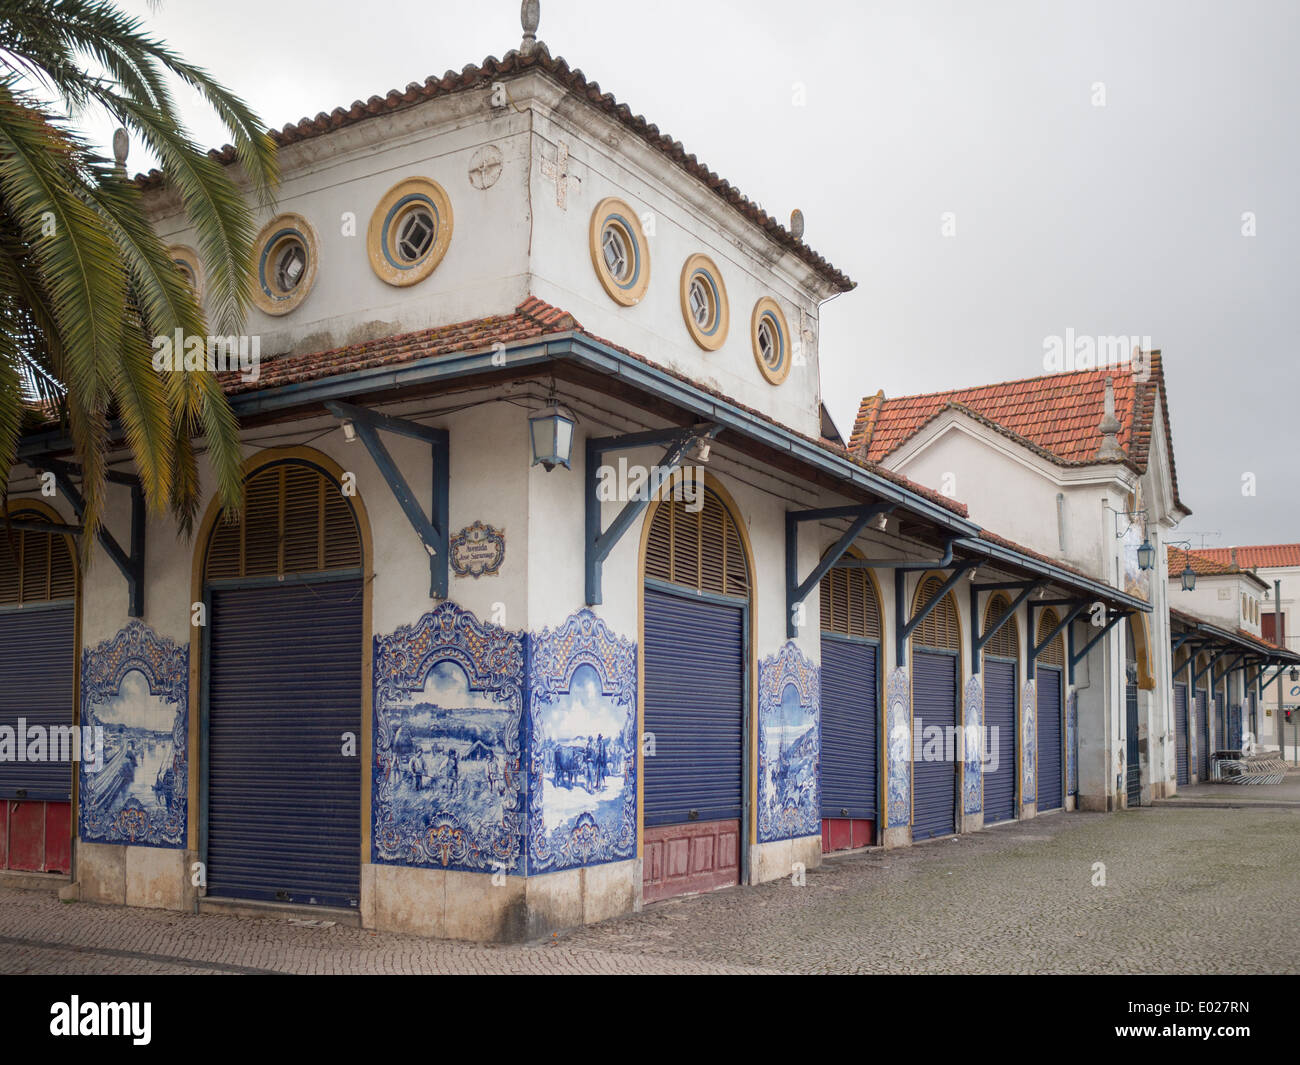 Mercado Santarem edificio decorado con baldosas azules y blancas Foto de stock